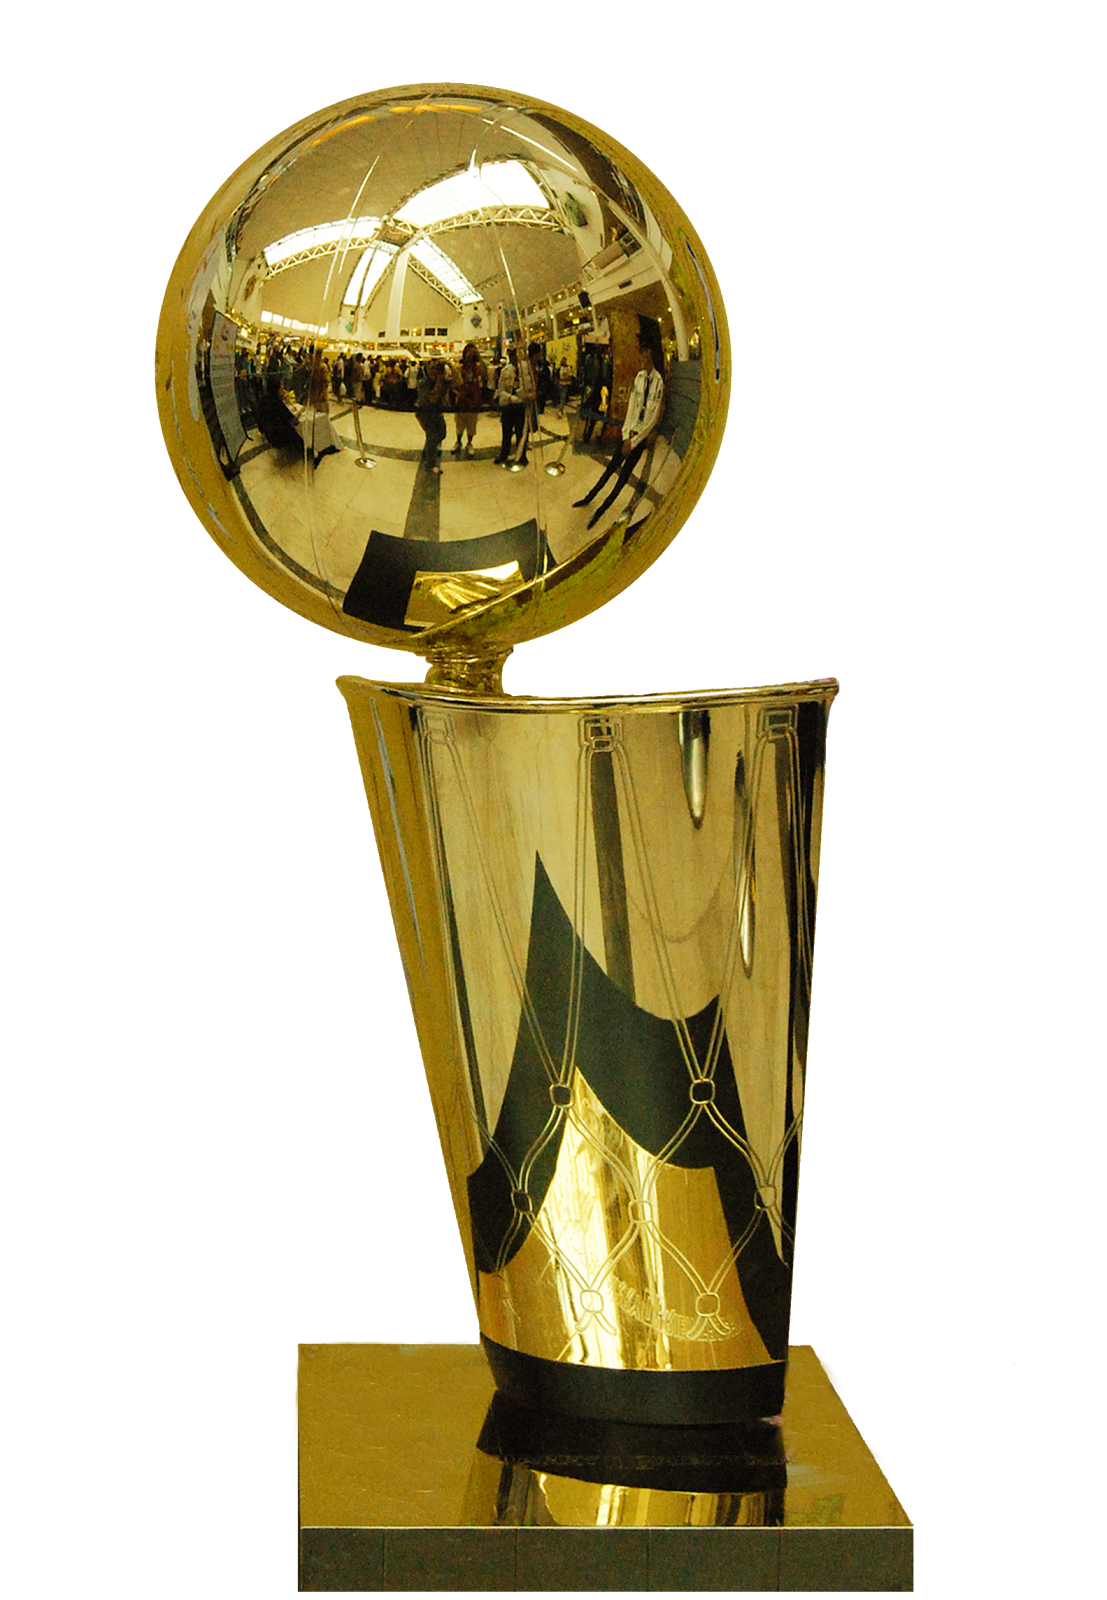 theKONGBLOG™: NBA FINALS 2015 INTERVIEW #1 w/ LEBRON JAMES